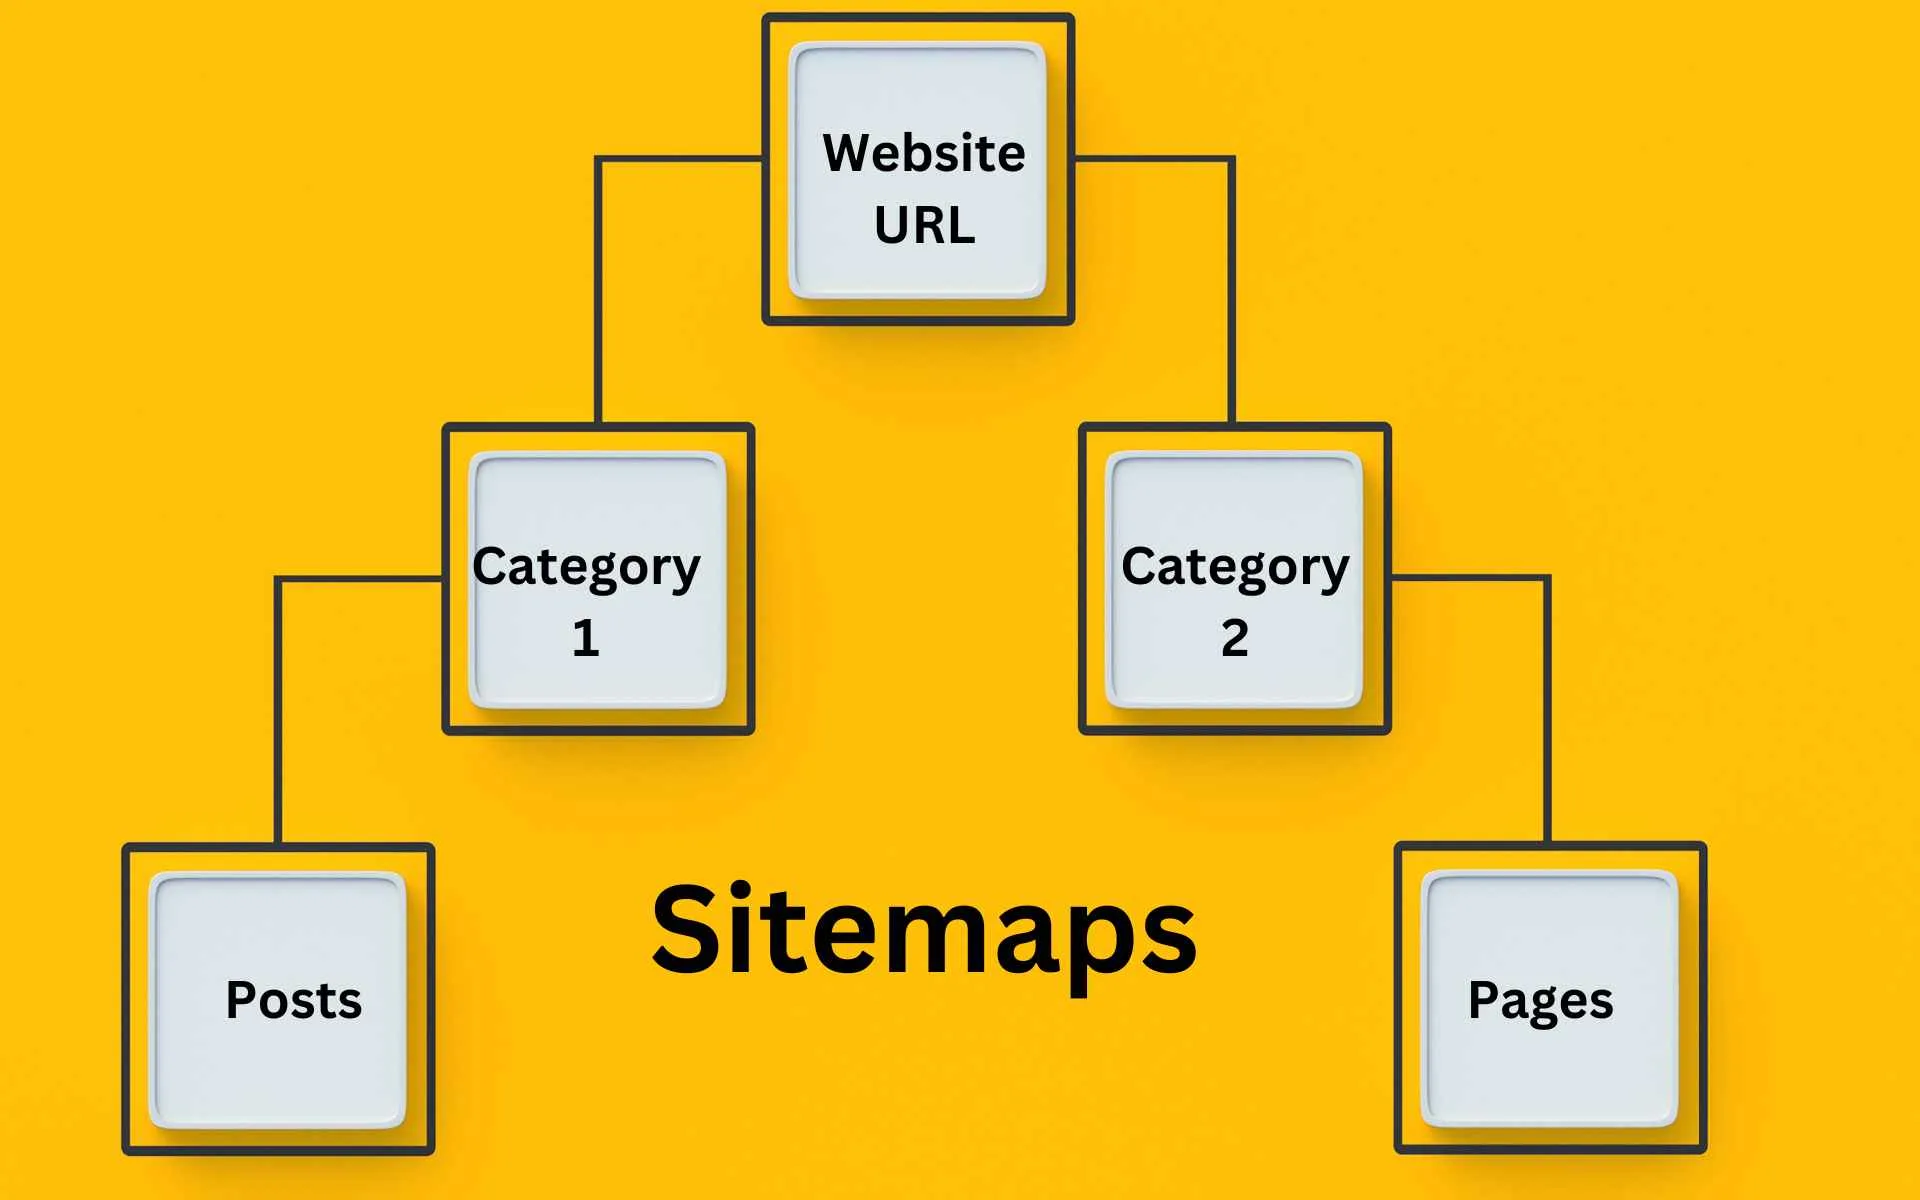 Sitemap: Qué es y cómo crearlo para tu sitio web [Guía completa] | Dosmedia